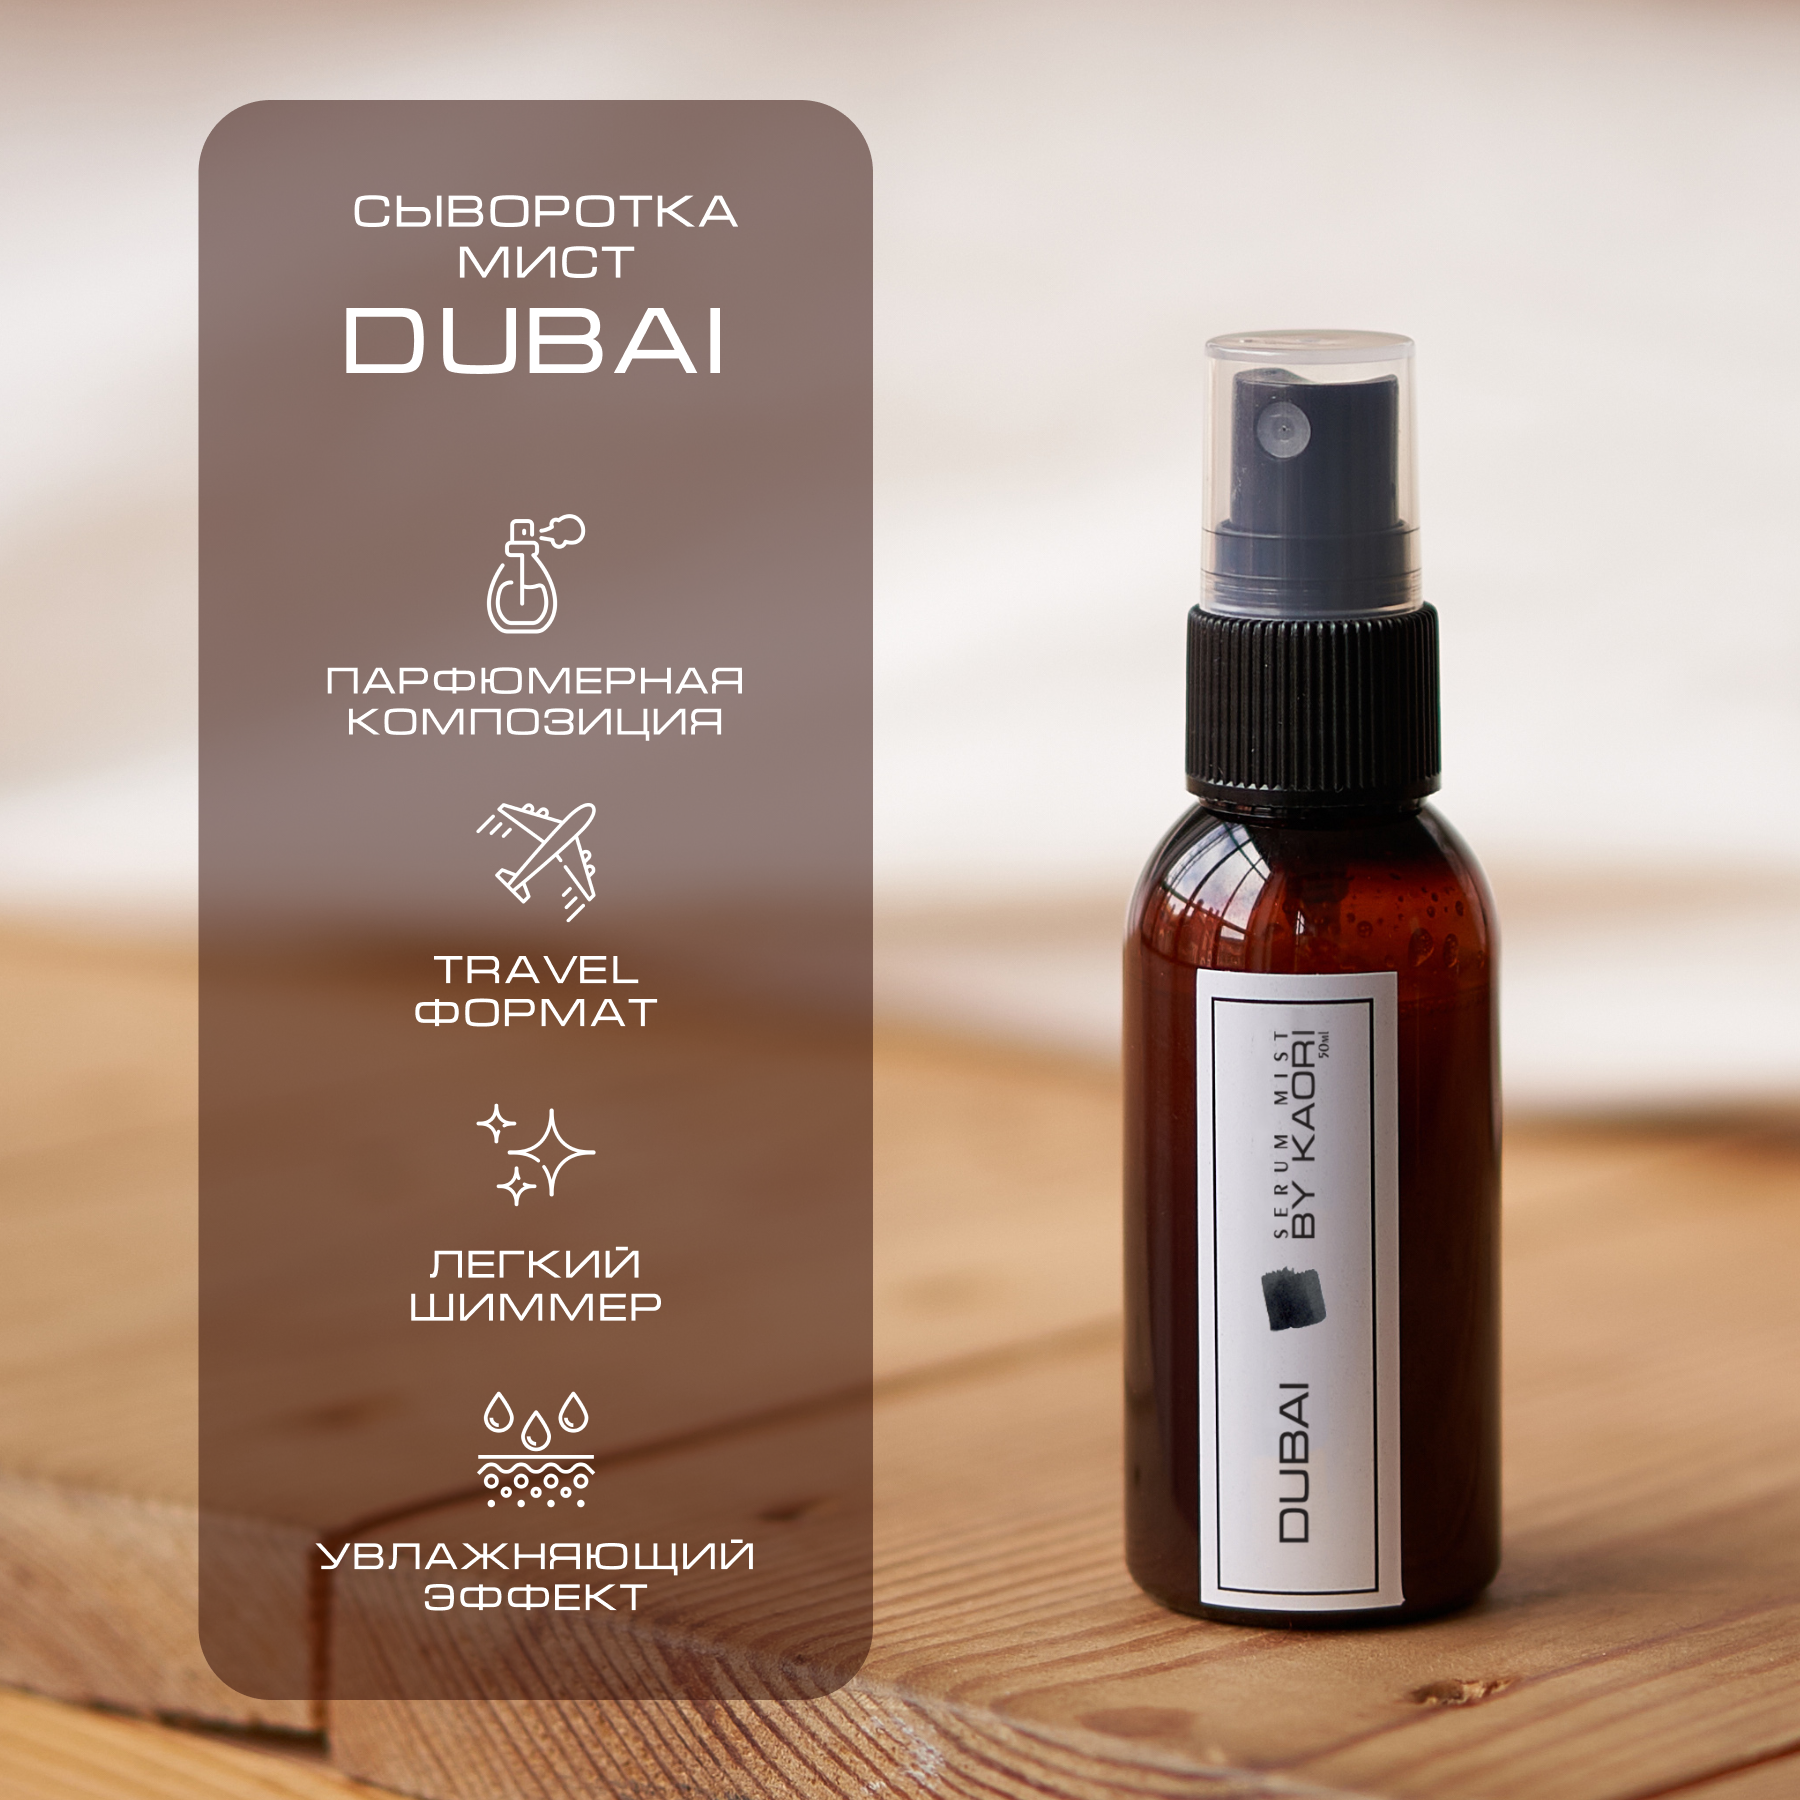 Сыворотка мист для тела By Kaori спрей парфюмированный тревел формат Dubai 50 мл james read спрей для тела роскошное сияние h2o 200 мл